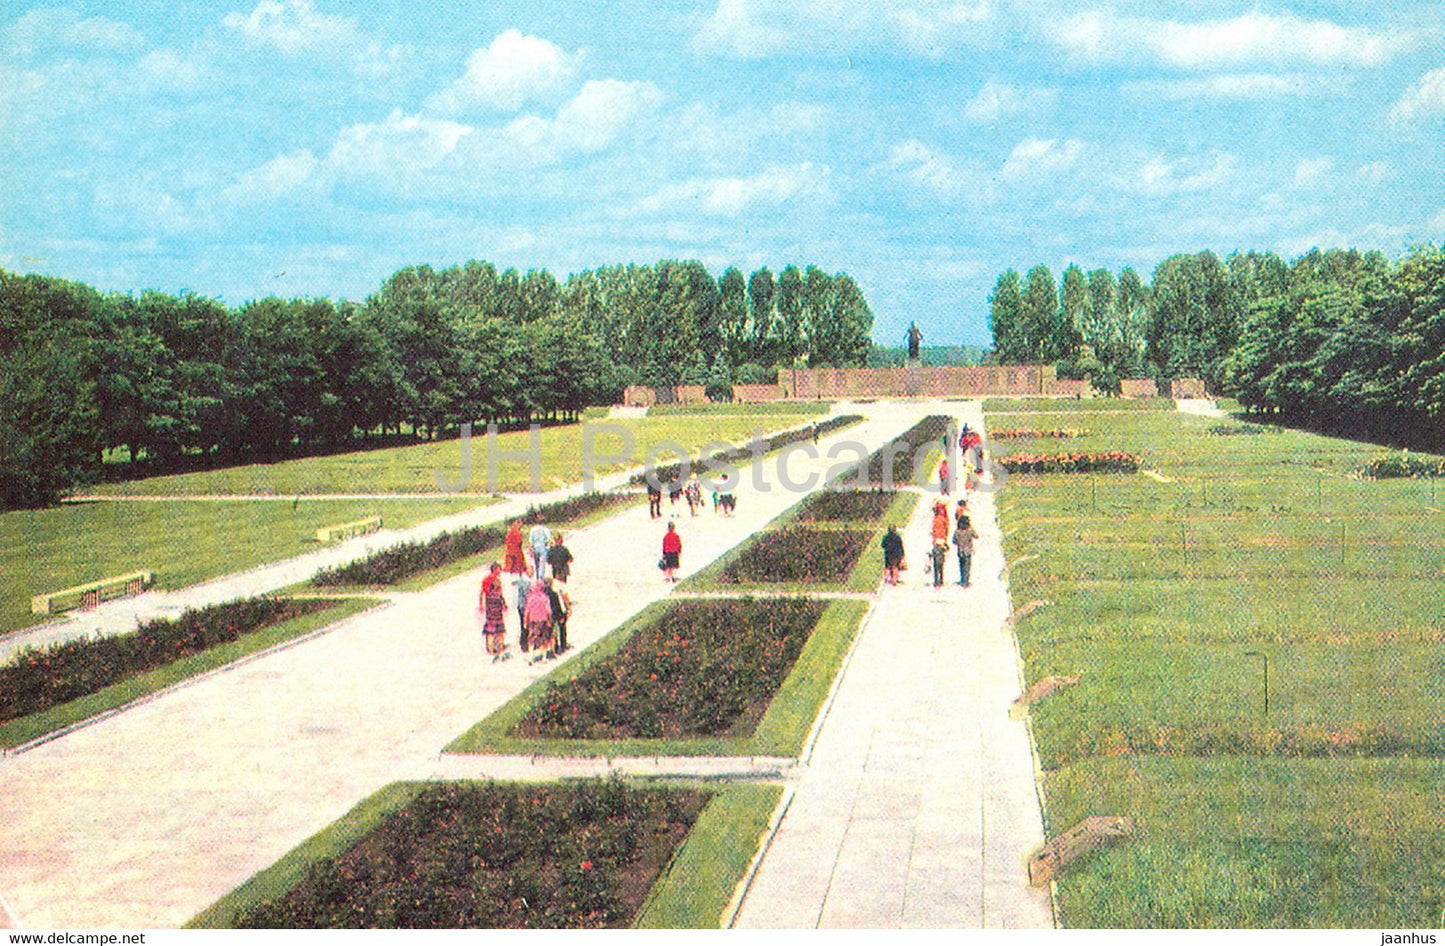 Leningrad - St Petersburg - Piskaryovskoye Memorial Cemetery - general view of ensemble - 1981 - Russia USSR - unused - JH Postcards